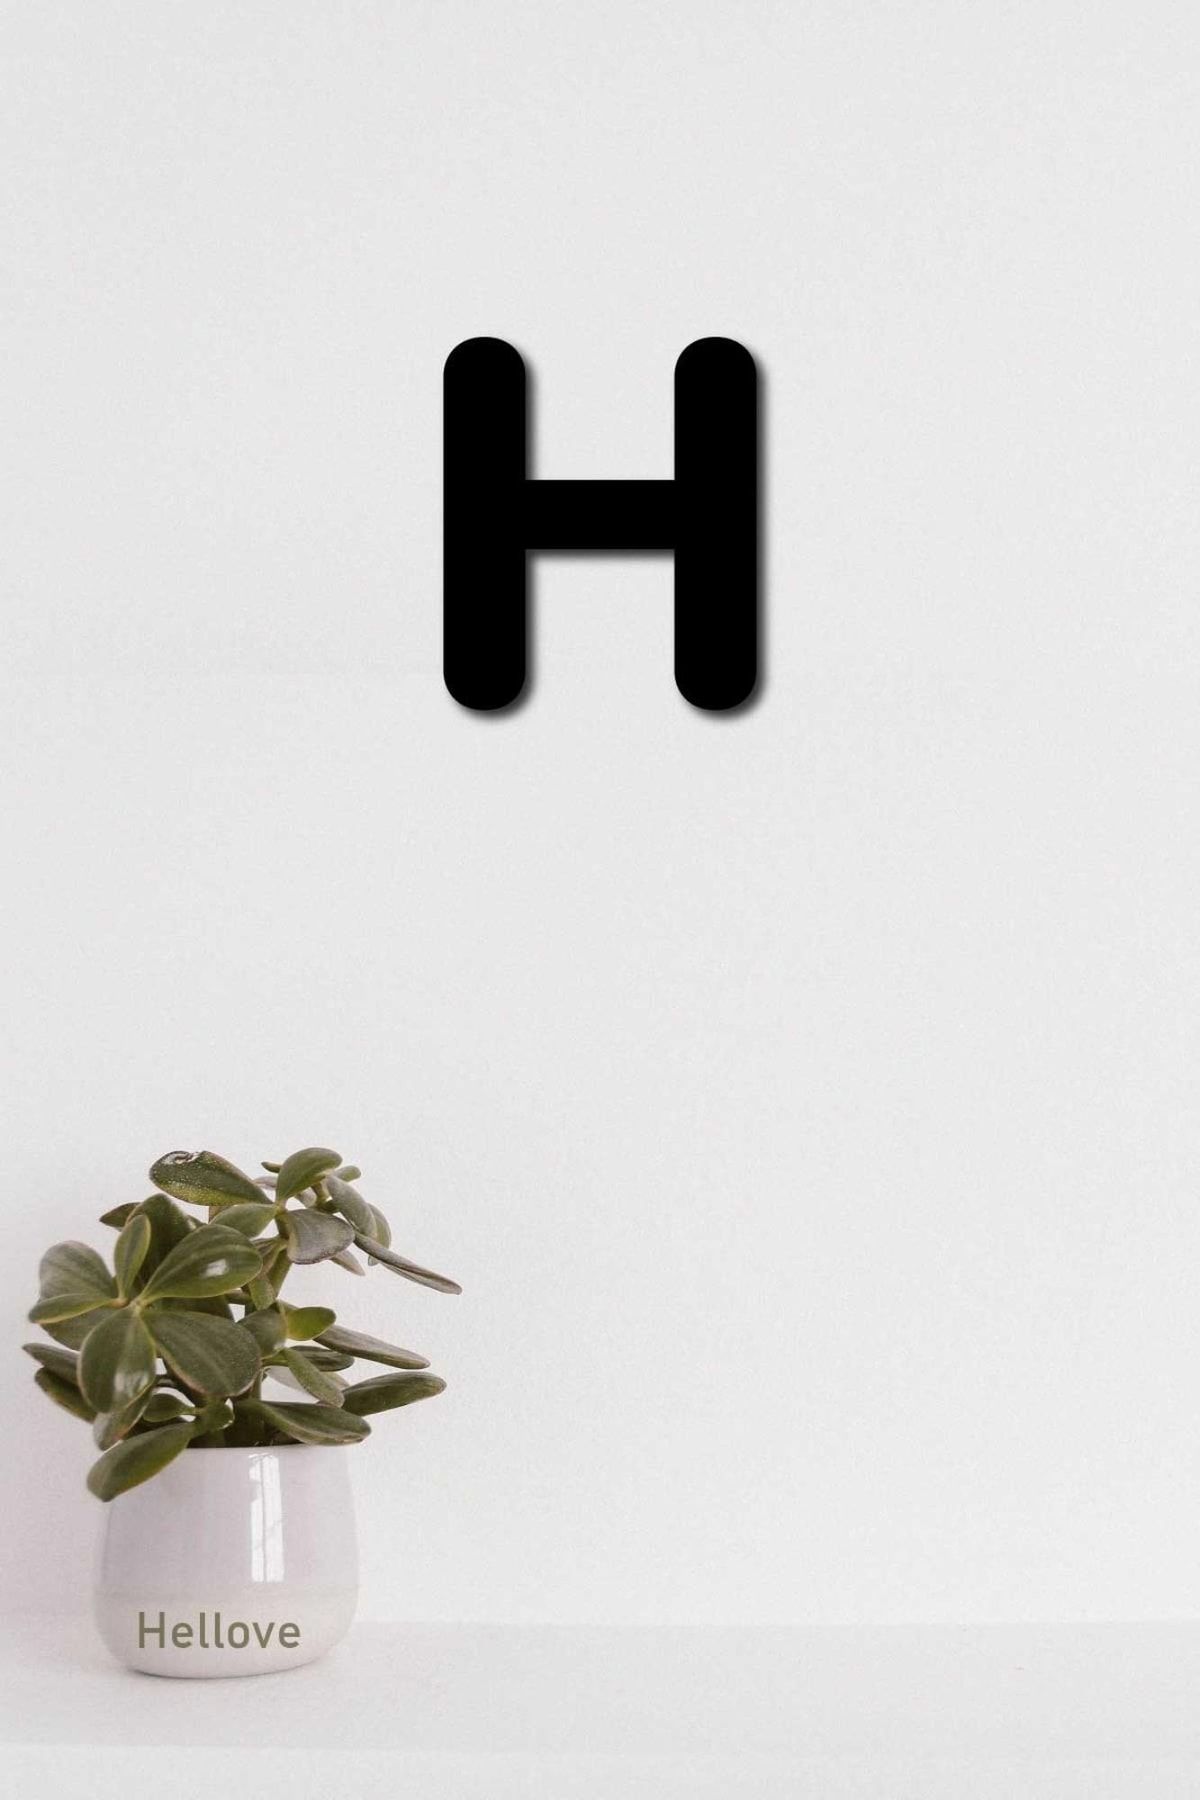 Hellove H Harfi Tamamlanabilir Duvar Yazısı Isim Yazmak Için Lazer Kesim Ahşap Harf